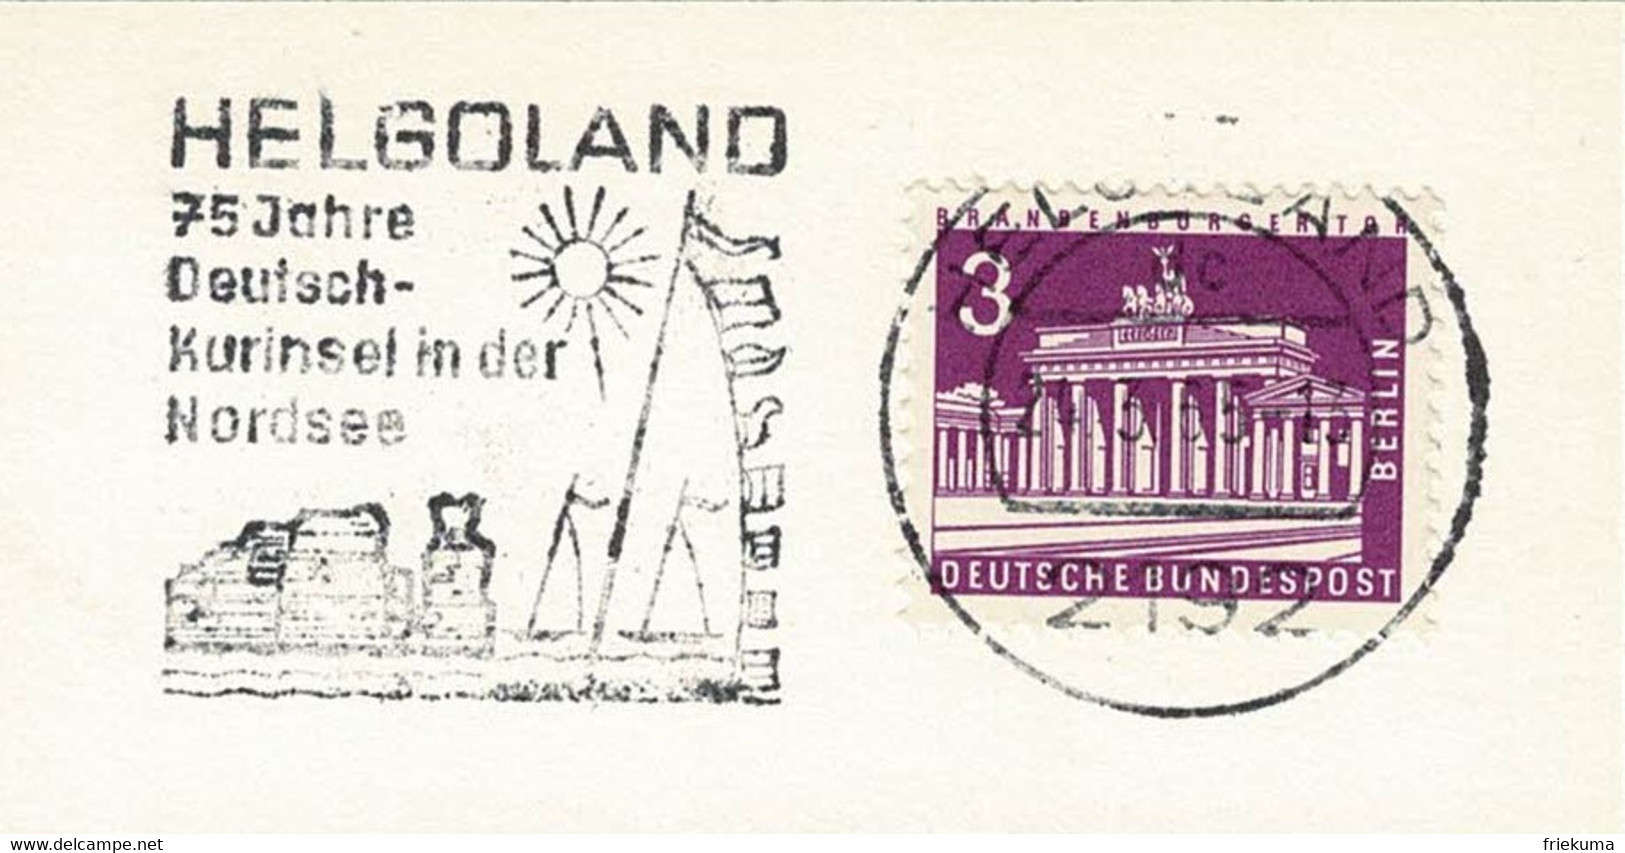 Deutsche Bundespost 1965, Flaggenstempel Helgoland, Kurinsel, Nordsee - Isole